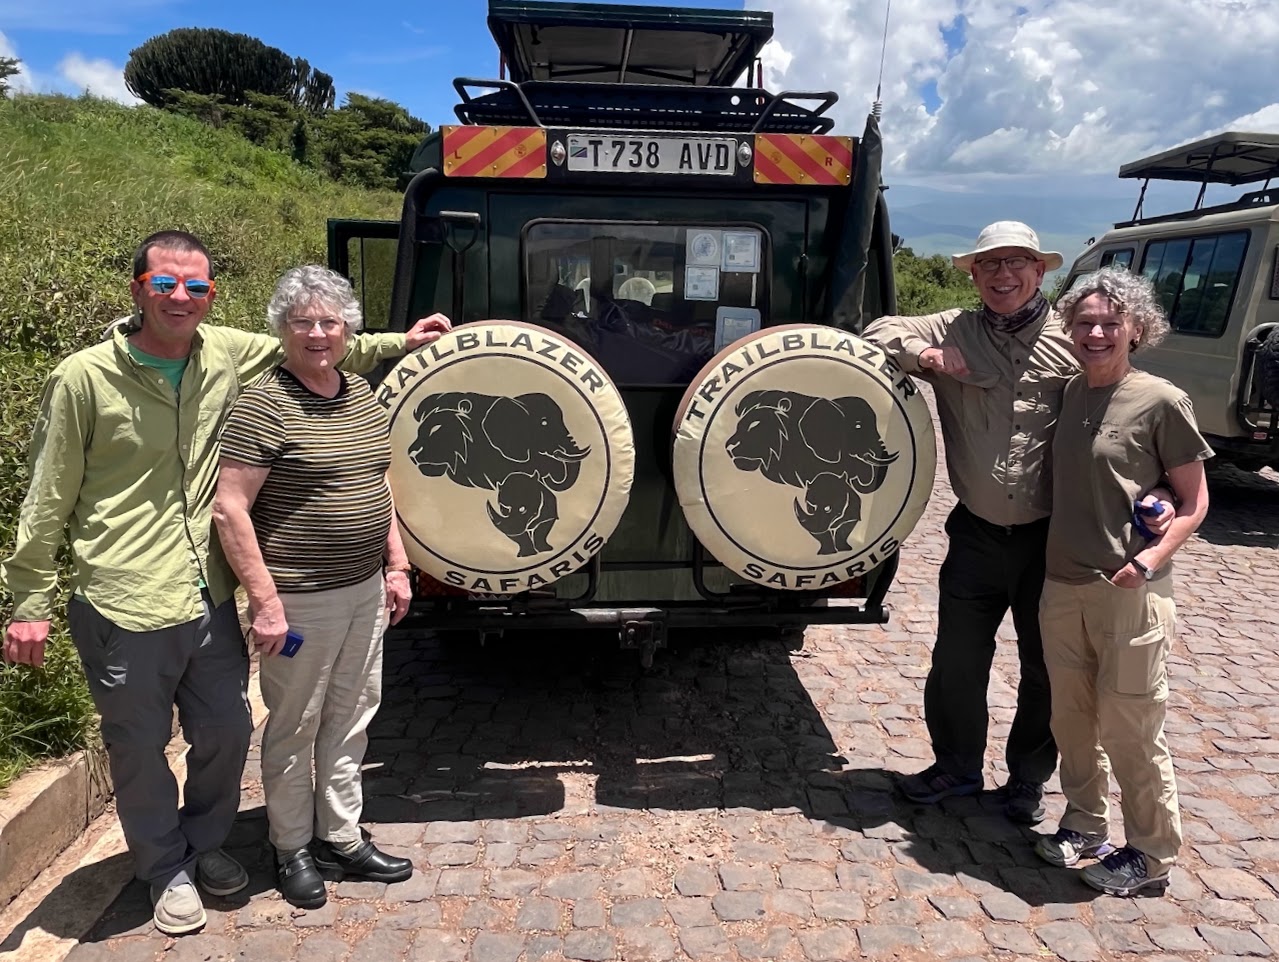 Alumni stand with the safari jeep